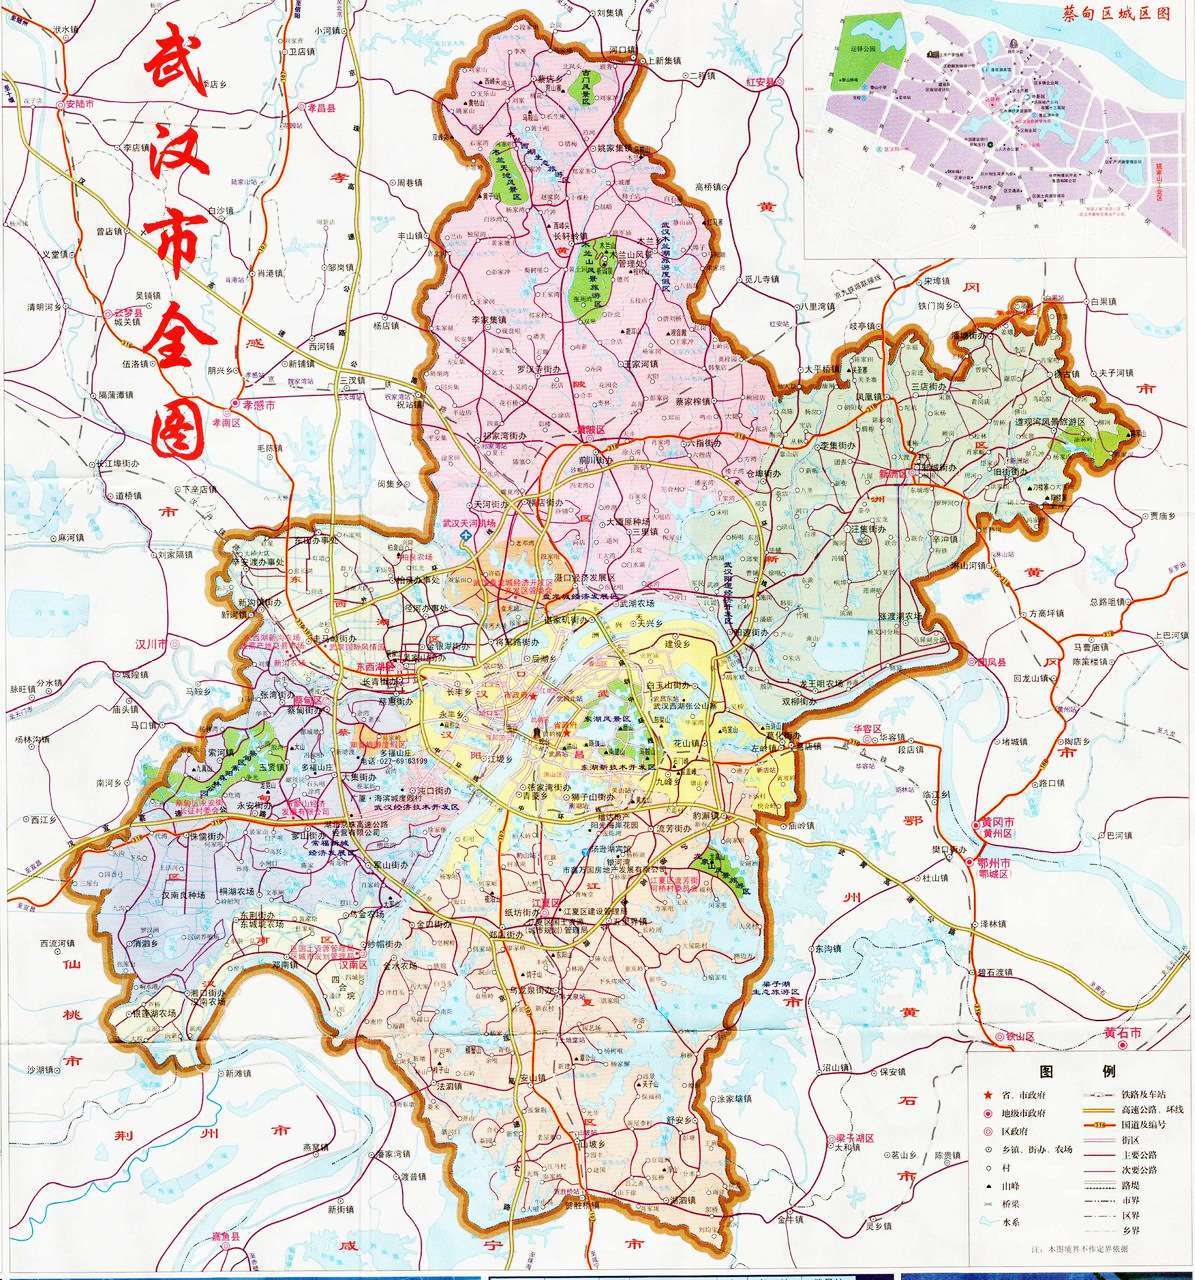 武汉三镇地图全景图-图库-五毛网